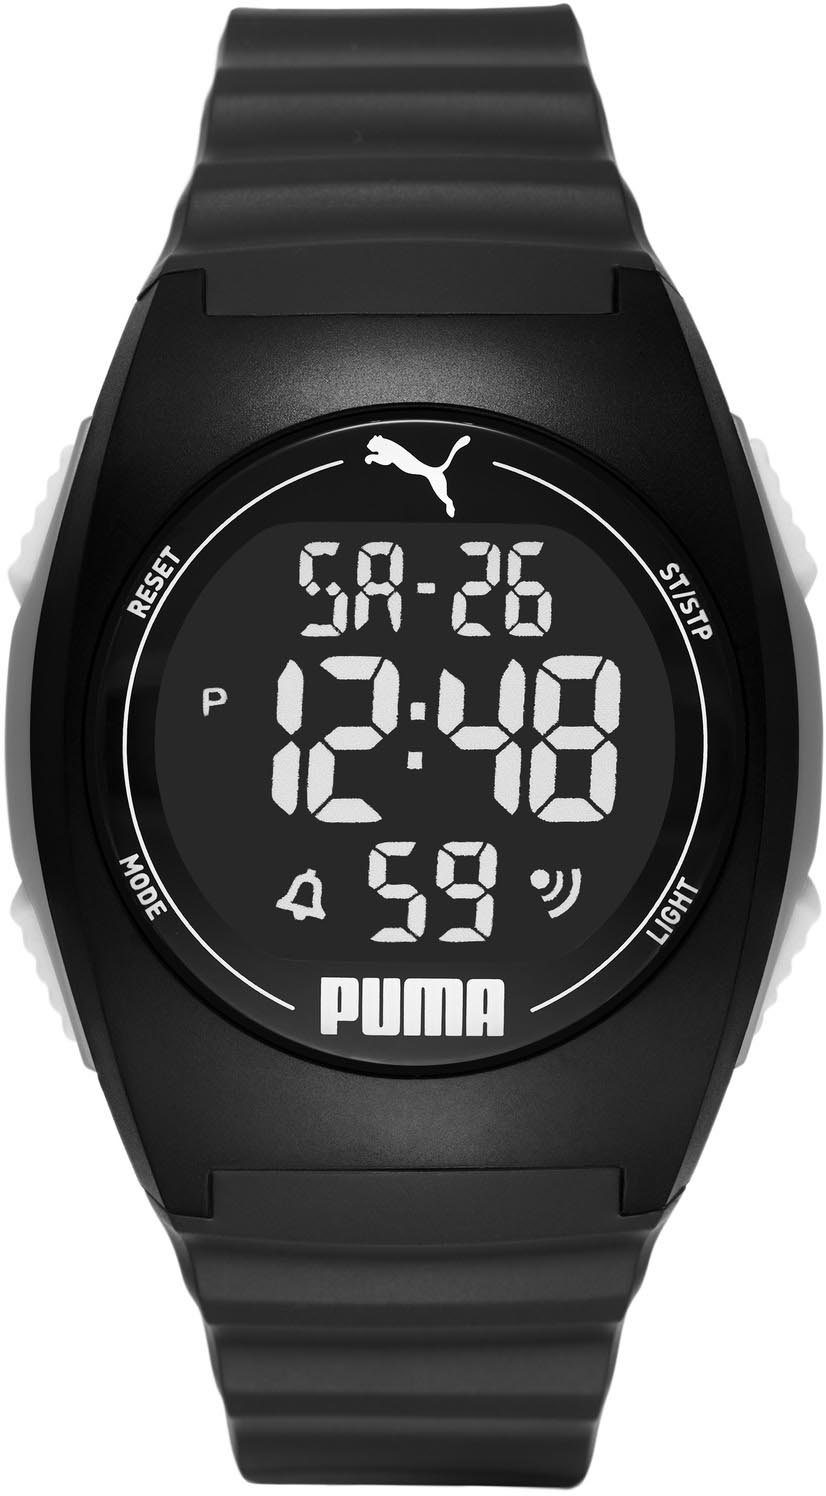 PUMA Digitaluhr »PUMA 4, P6015« online kaufen | OTTO